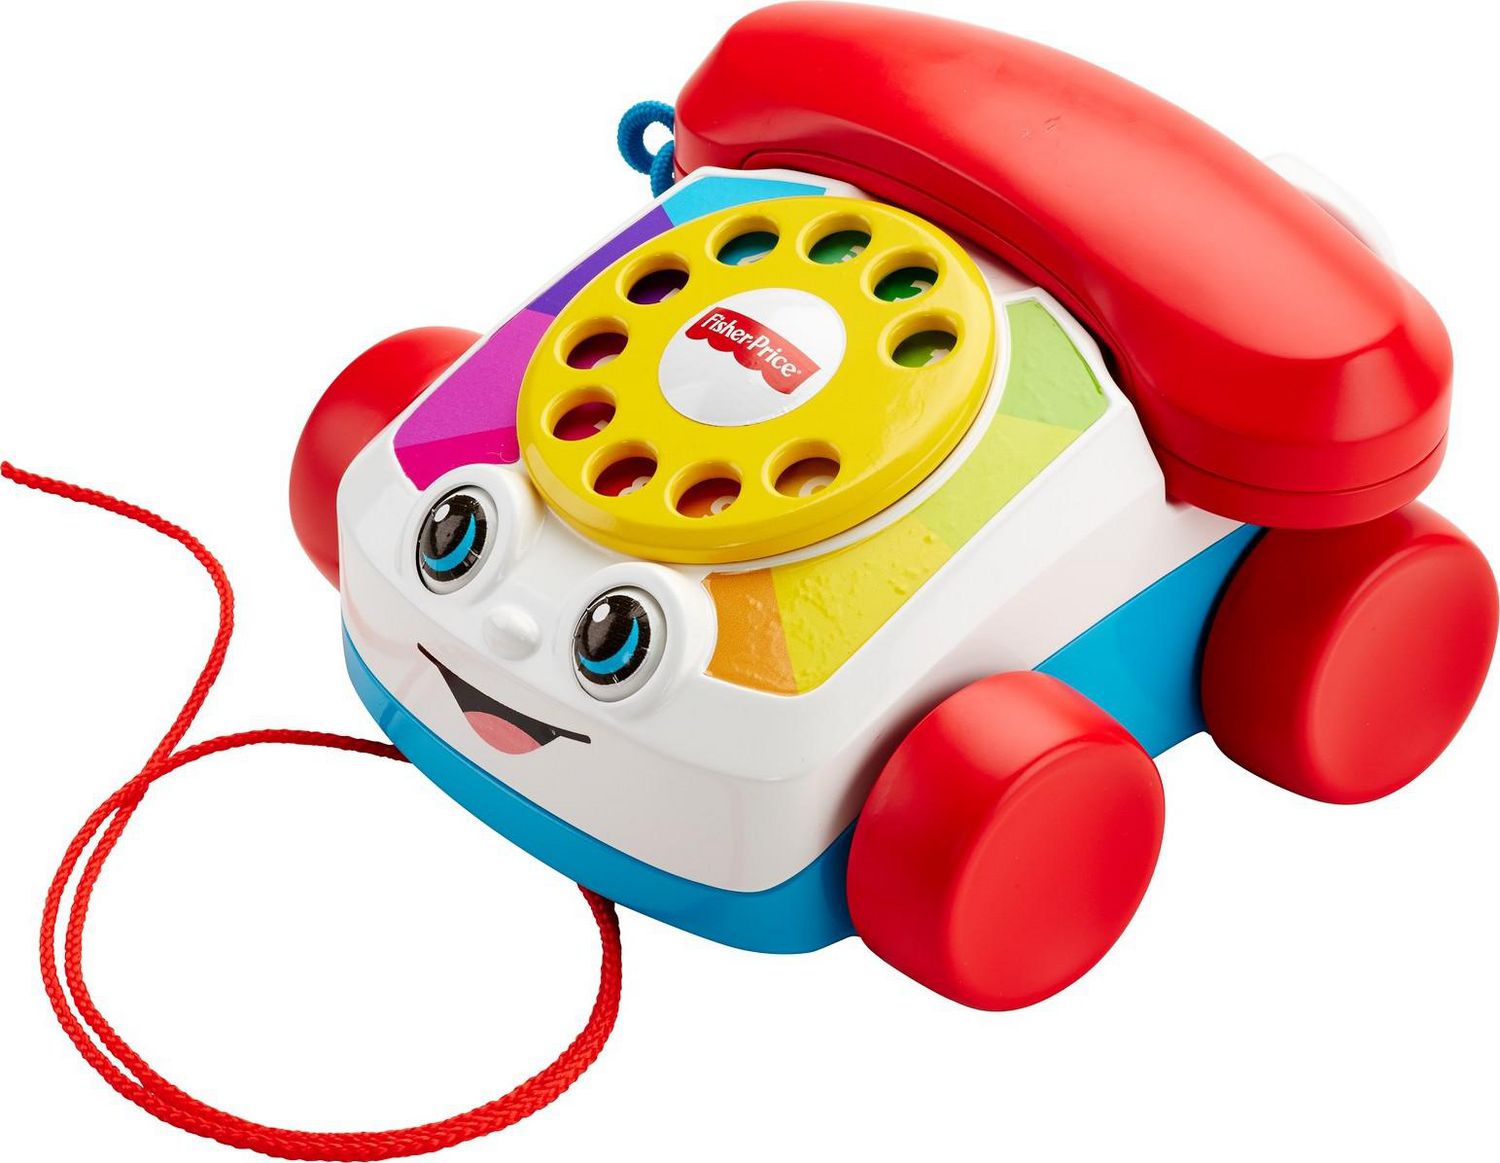 phone baby toy